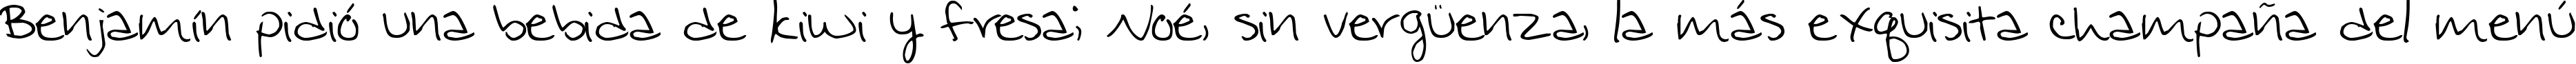 Пример написания шрифтом Jennifer's Hand Writing текста на испанском